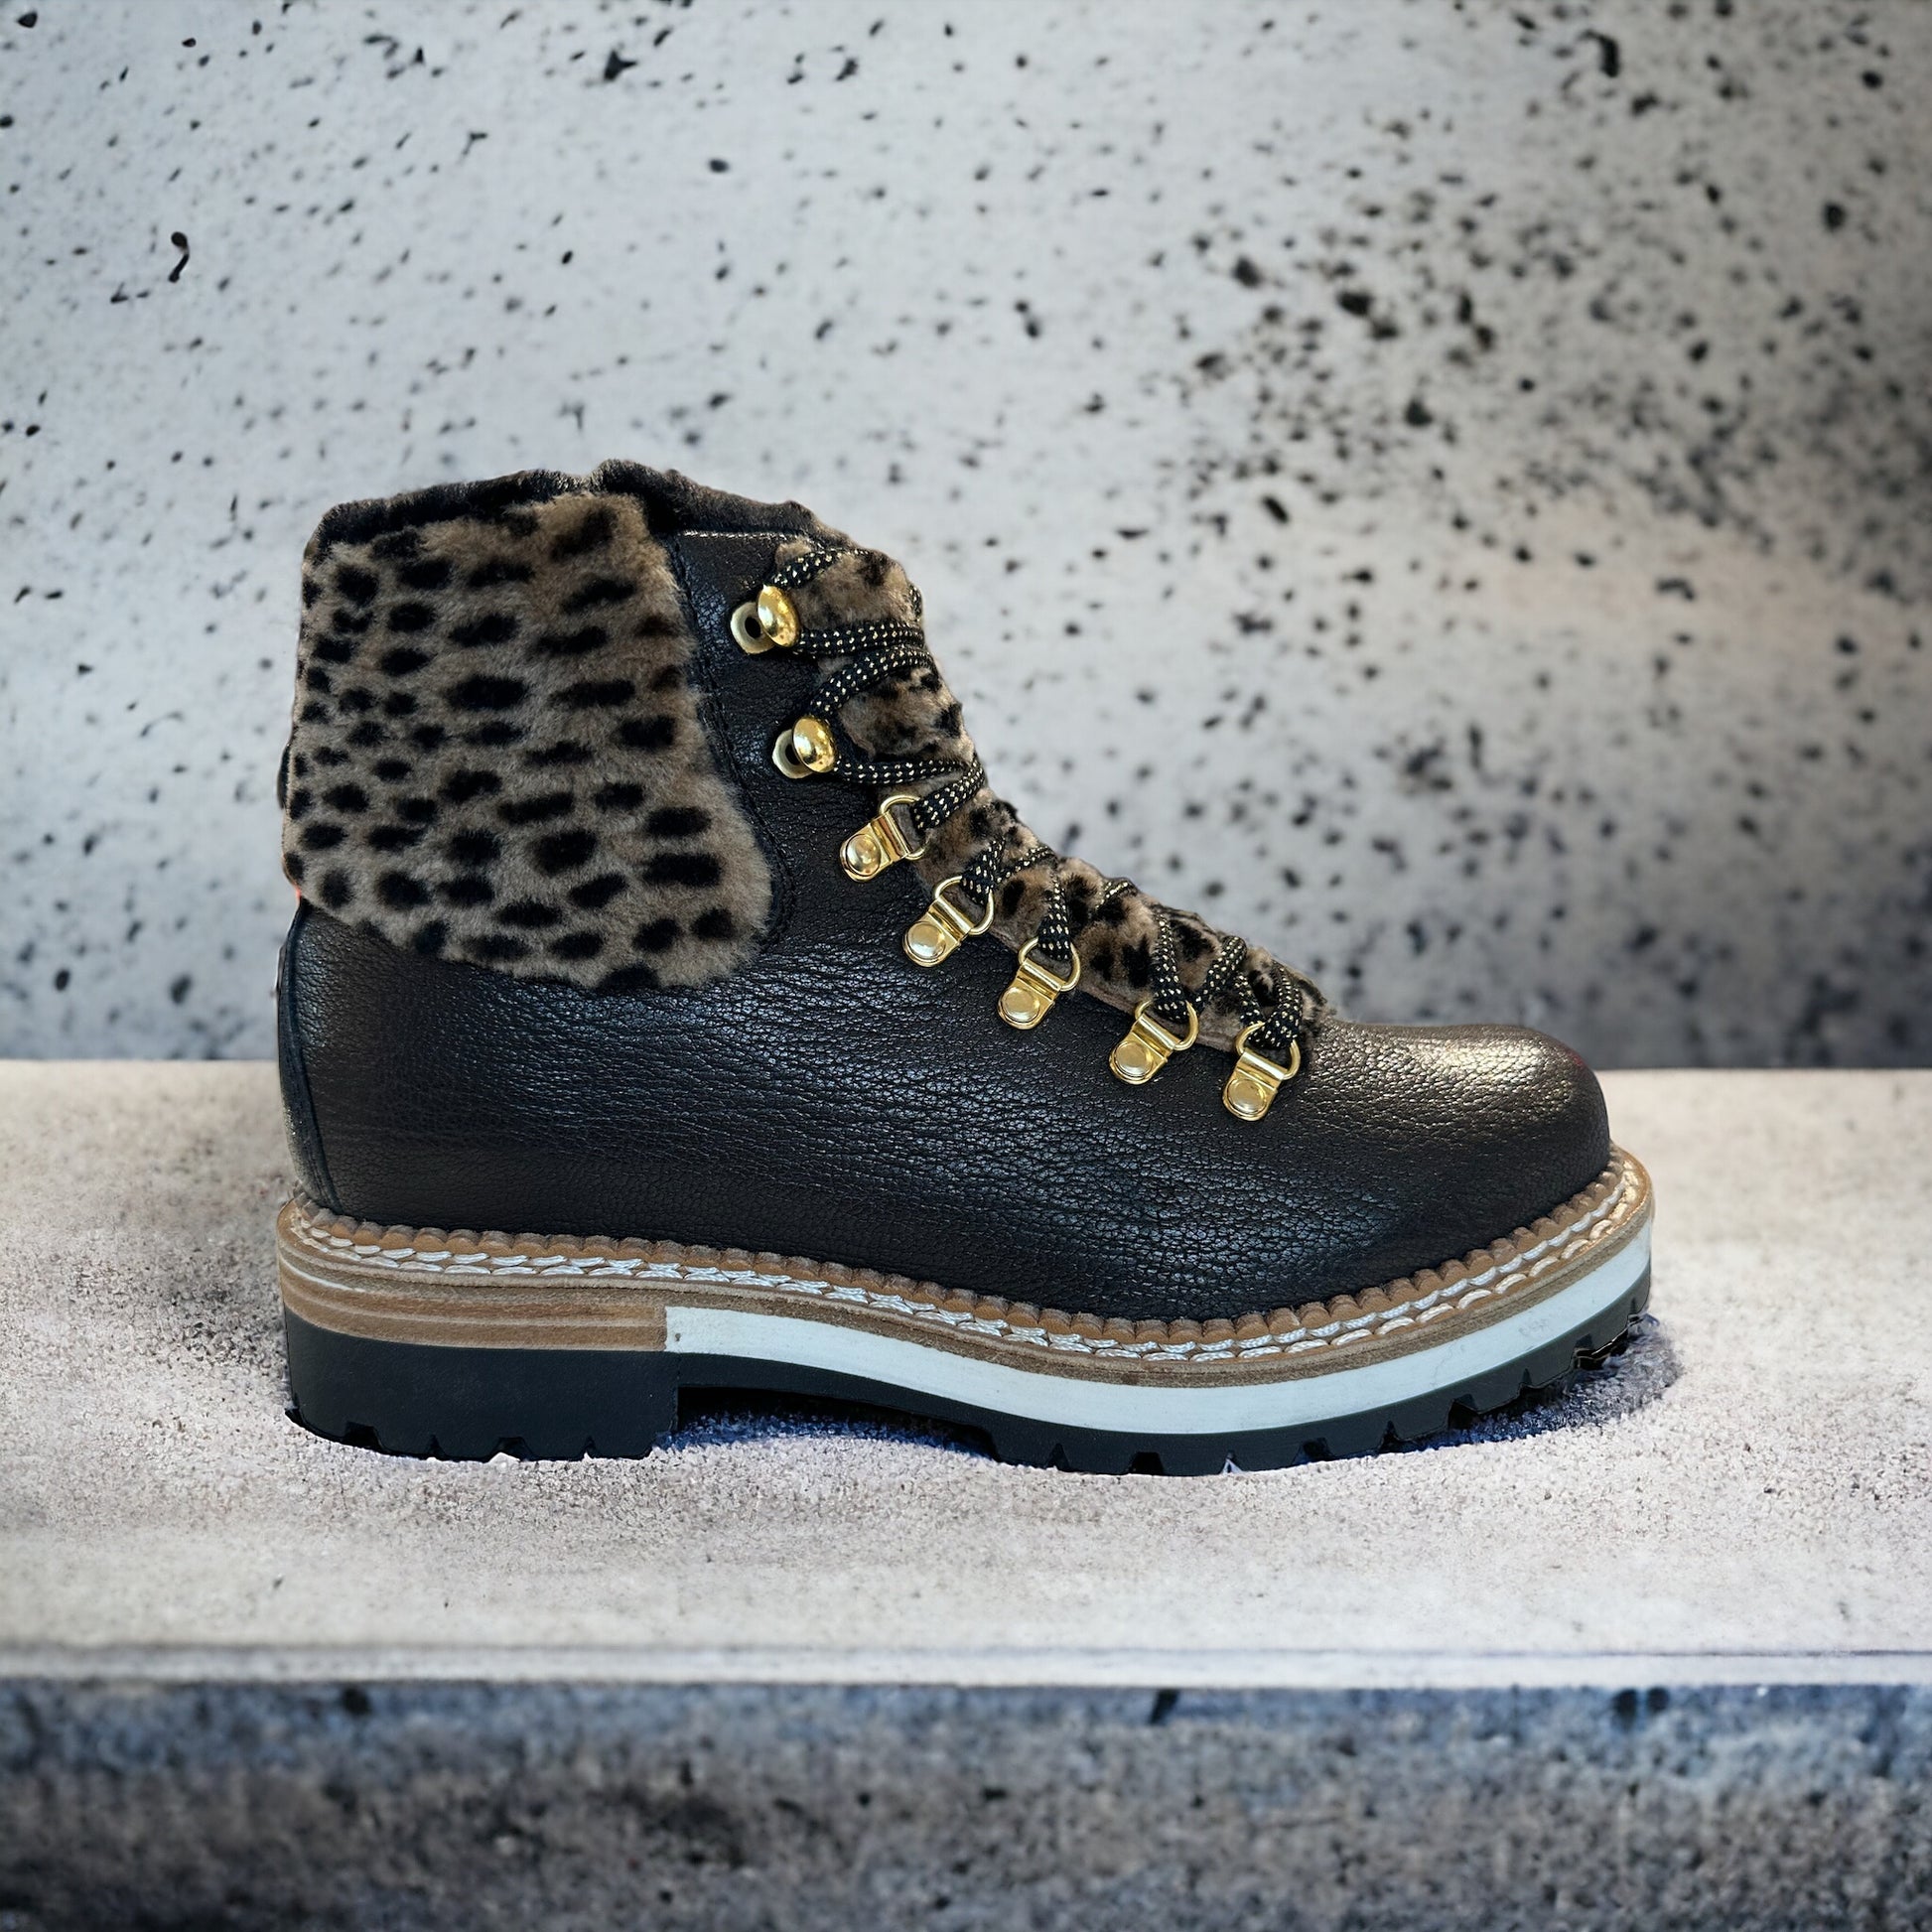 Leopard Print Boots -  Canada